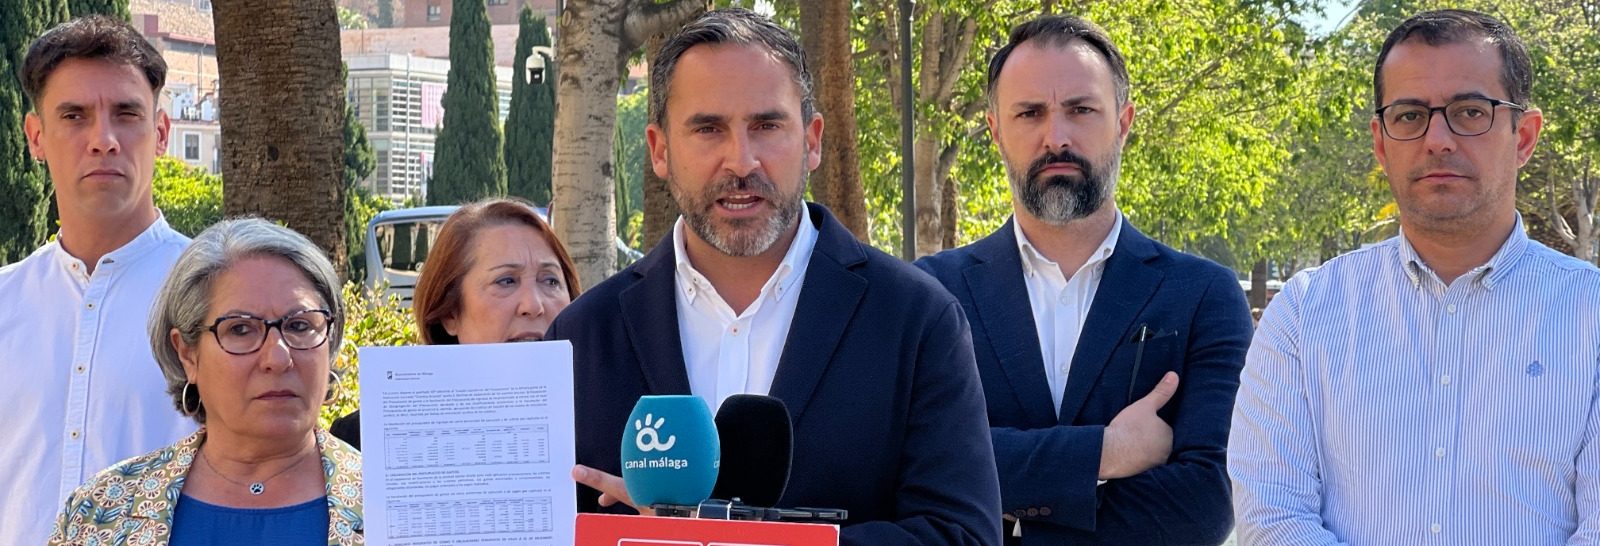 El PSOE califica como “vergonzoso” que el Ayuntamiento no ejecute “ni el 30%” en las áreas de Urbanismo y Vivienda